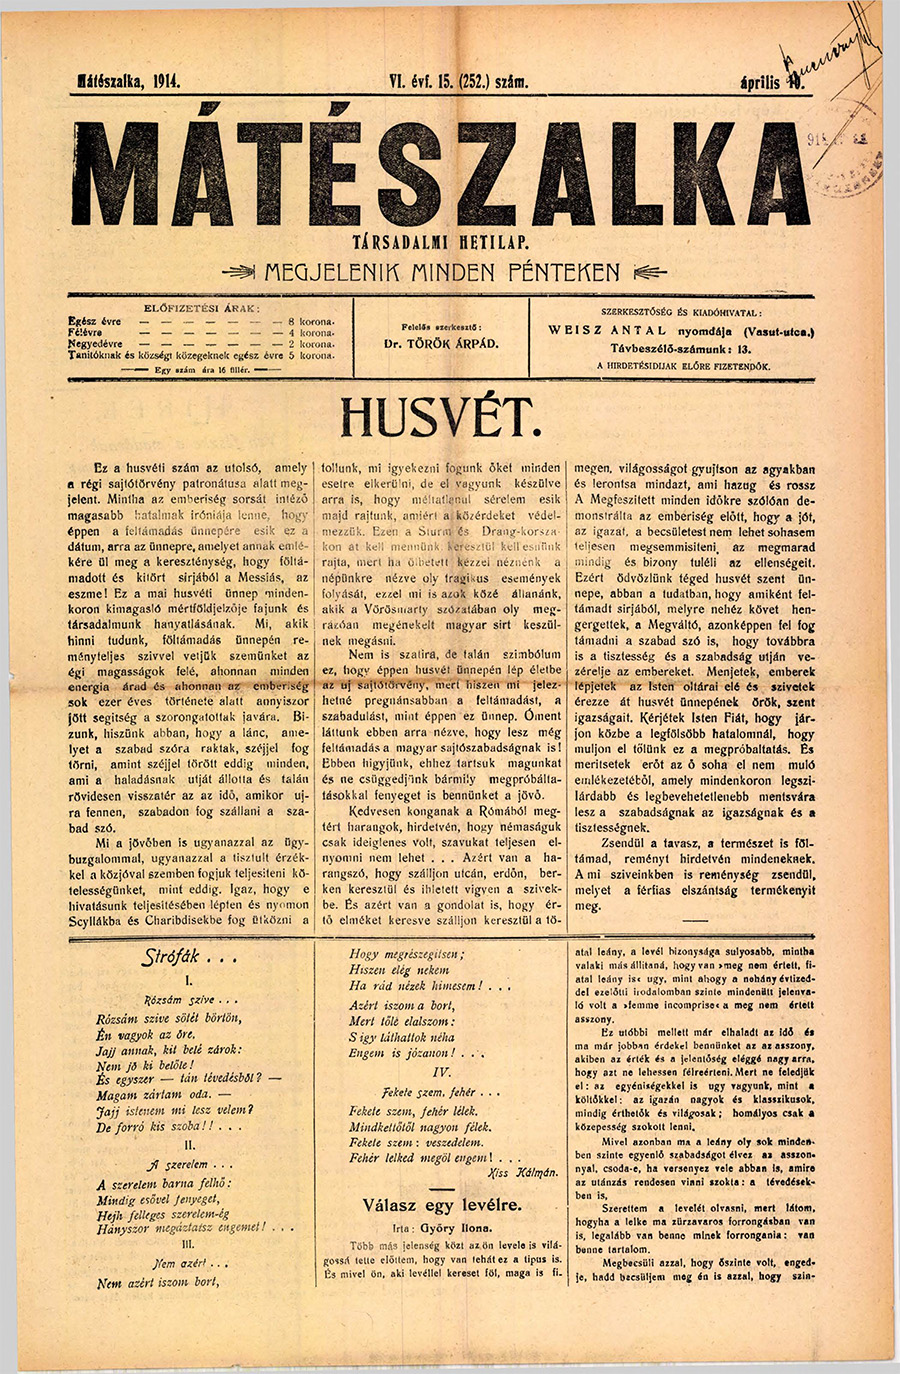 Mateszalka 1914 pages85 85